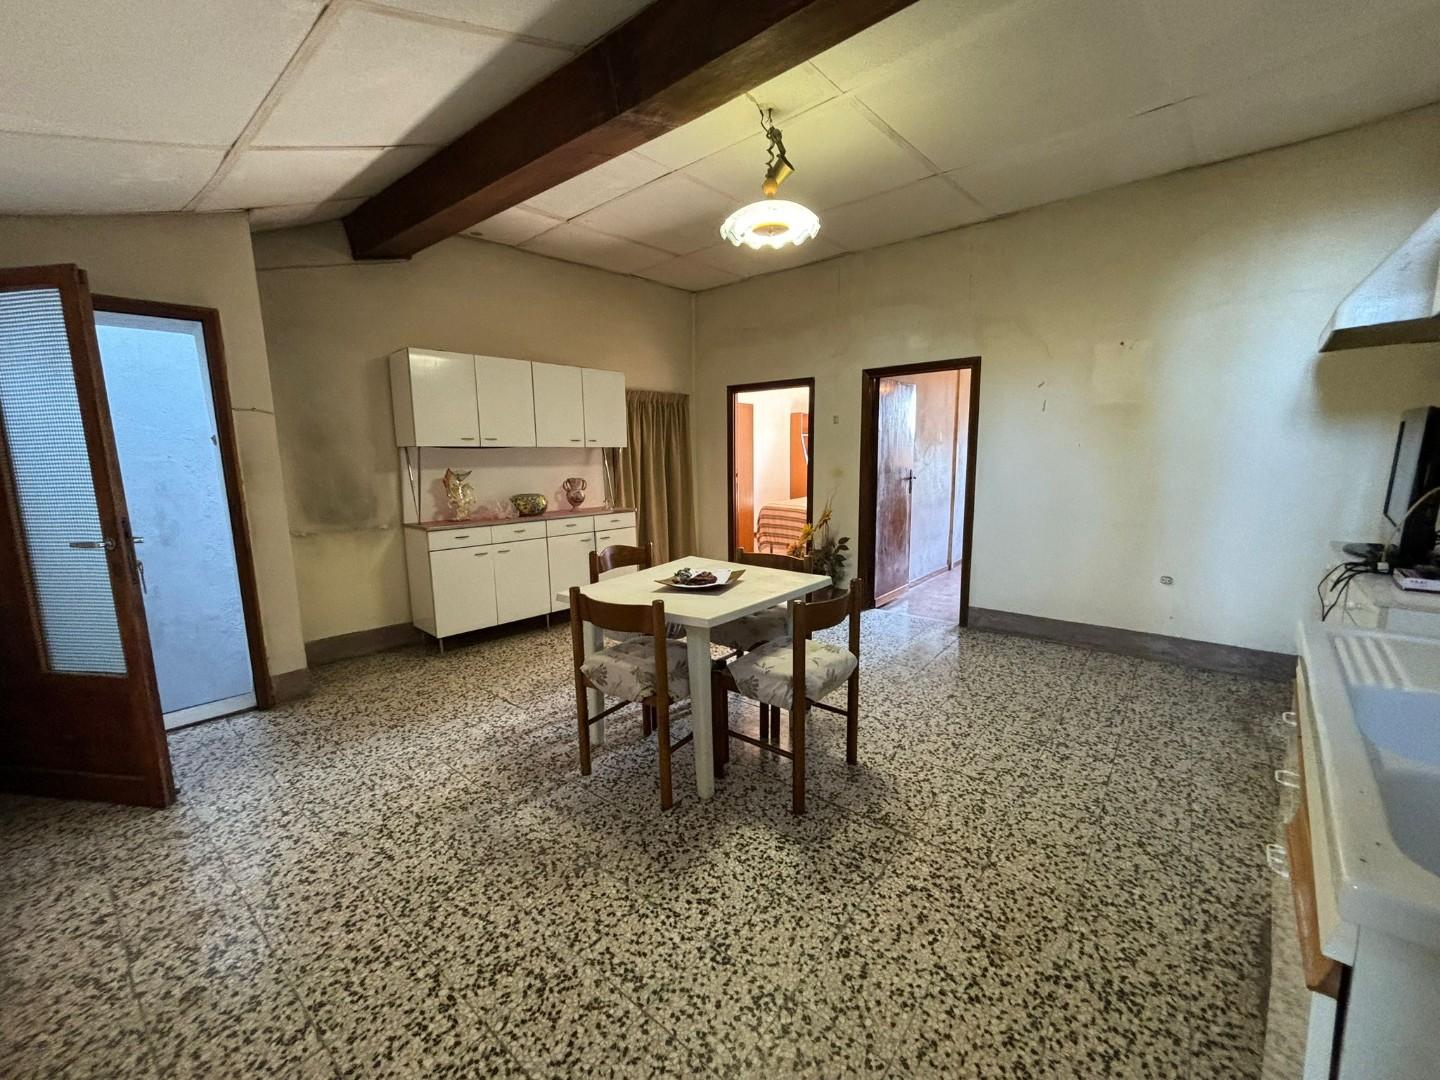 Appartamento in vendita a Terricciola, 4 locali, prezzo € 85.000 | PortaleAgenzieImmobiliari.it